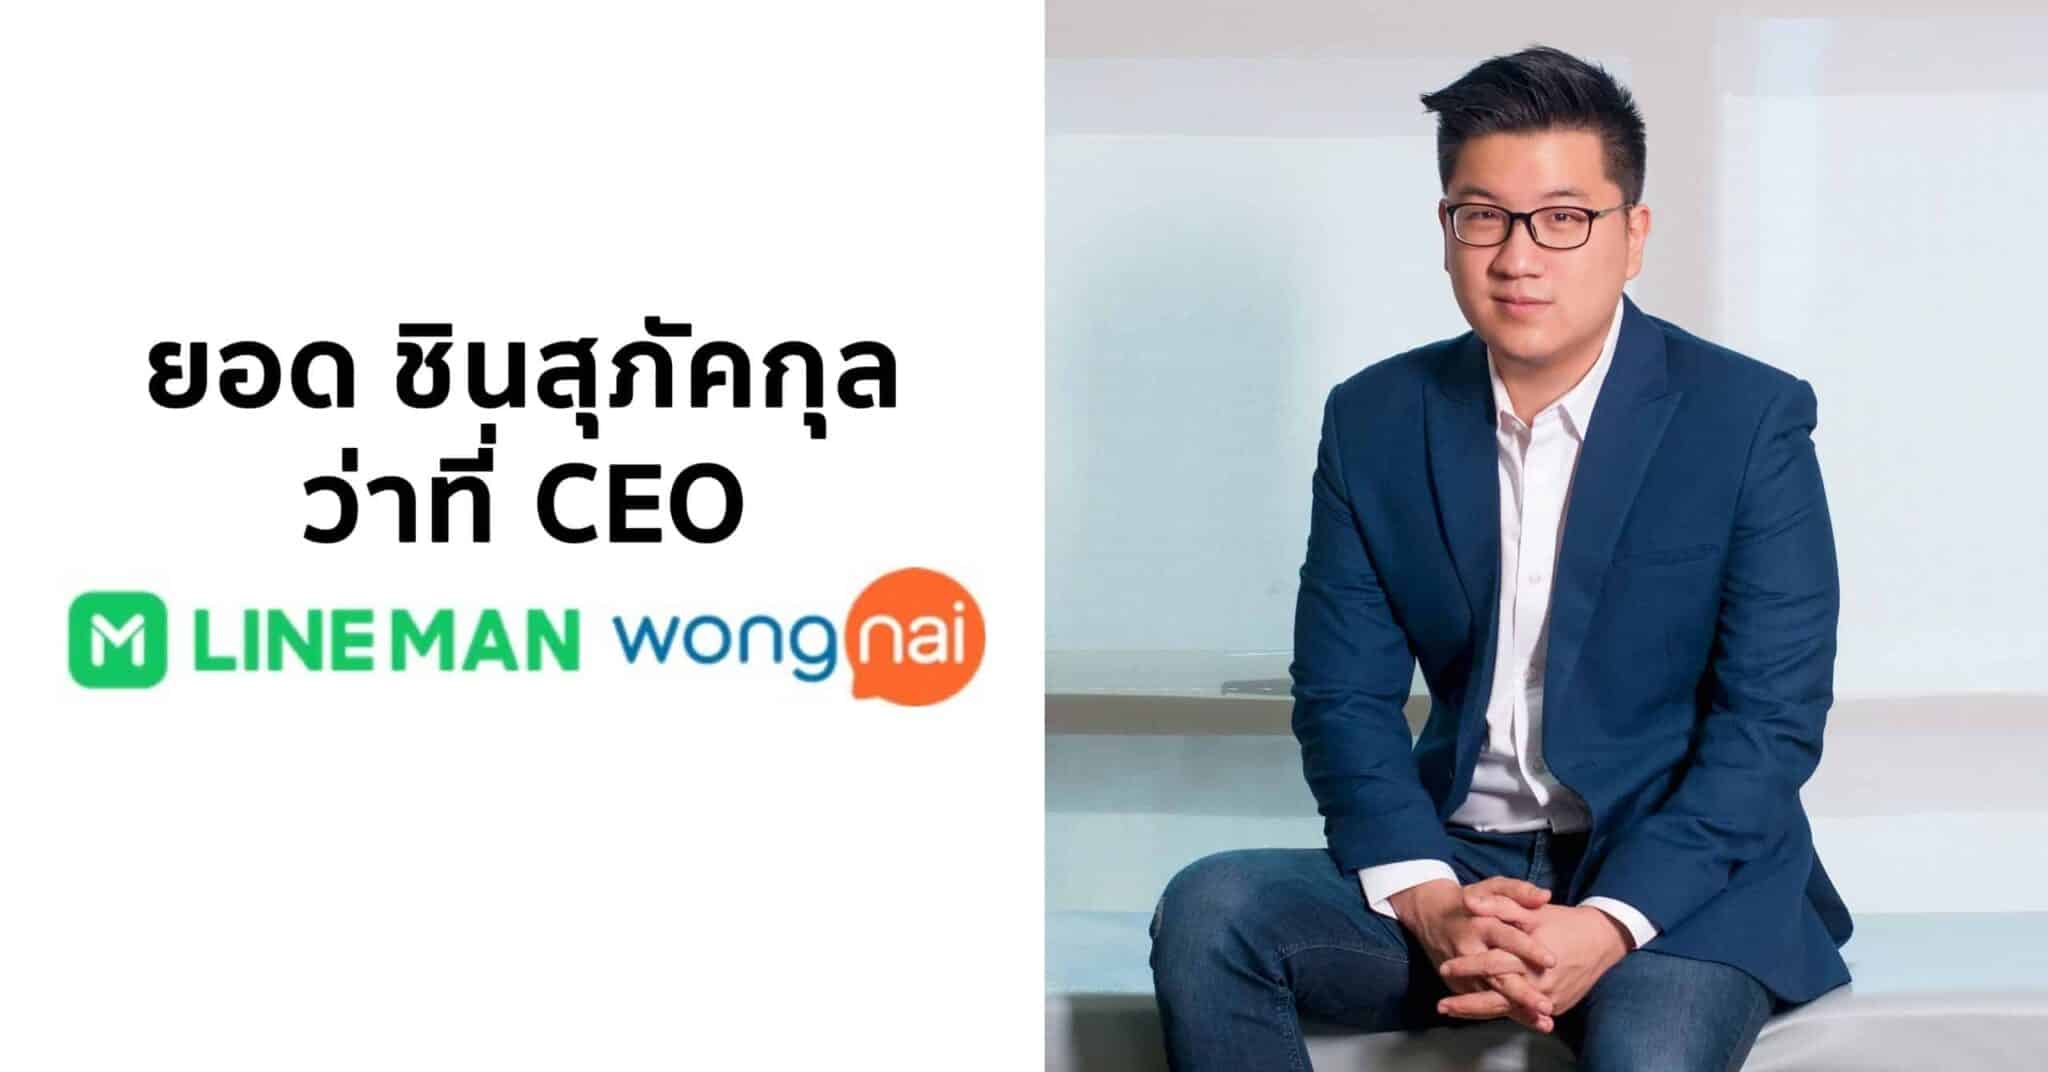 ยอด ชินสุภัคกุล เตรียมรับตำแหน่ง CEO LINE MAN Wongnai